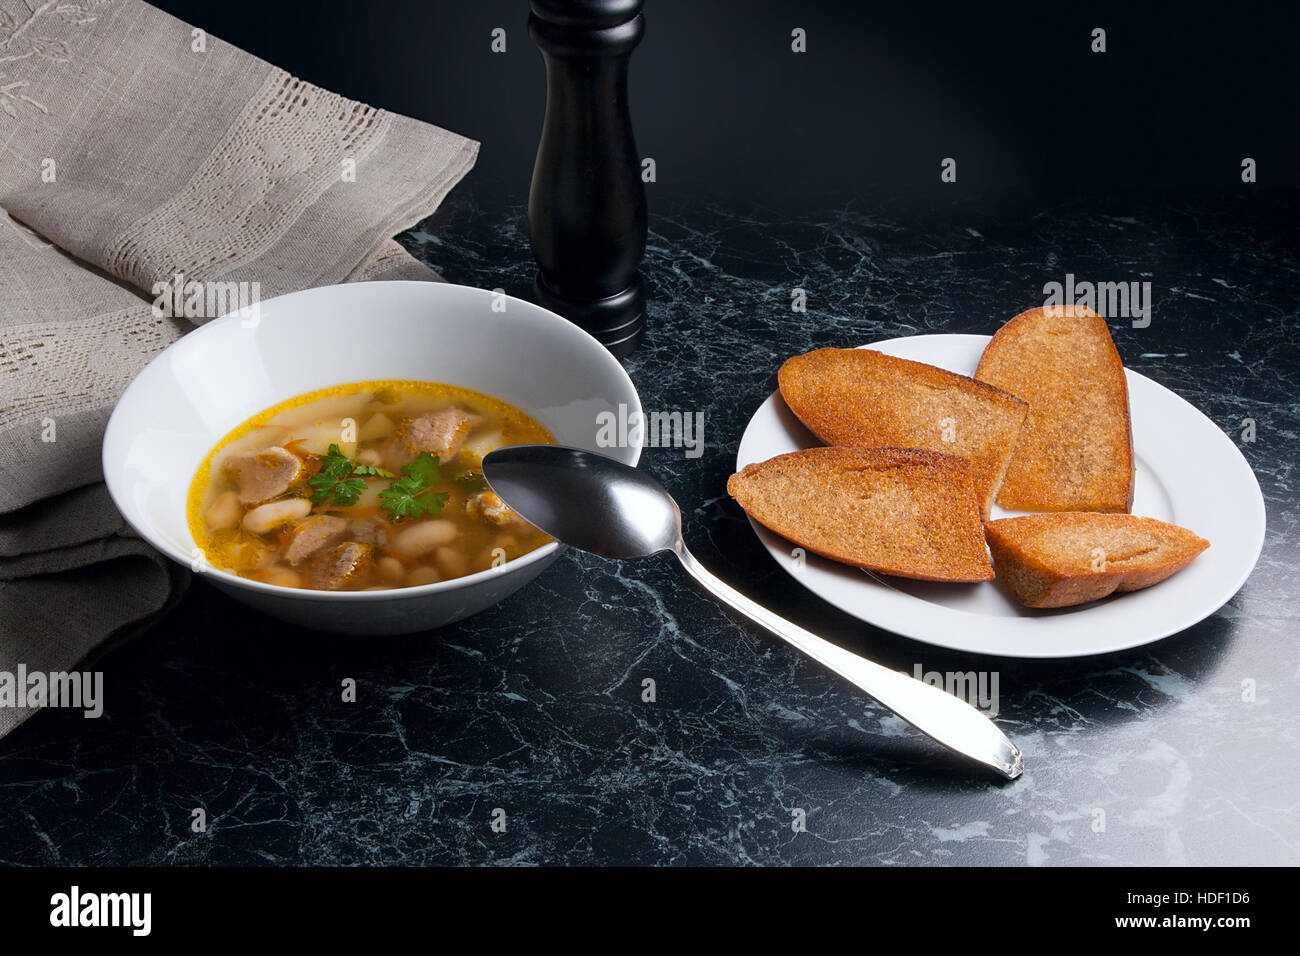 Bohnensuppe in weiße Schüssel mit Metalllöffel auf einem schwarzen Stein Hintergrund. Einige toast auf weißen Teller und schwarze Mühle für Pfeffer auf braunem Tuch. Stockfoto